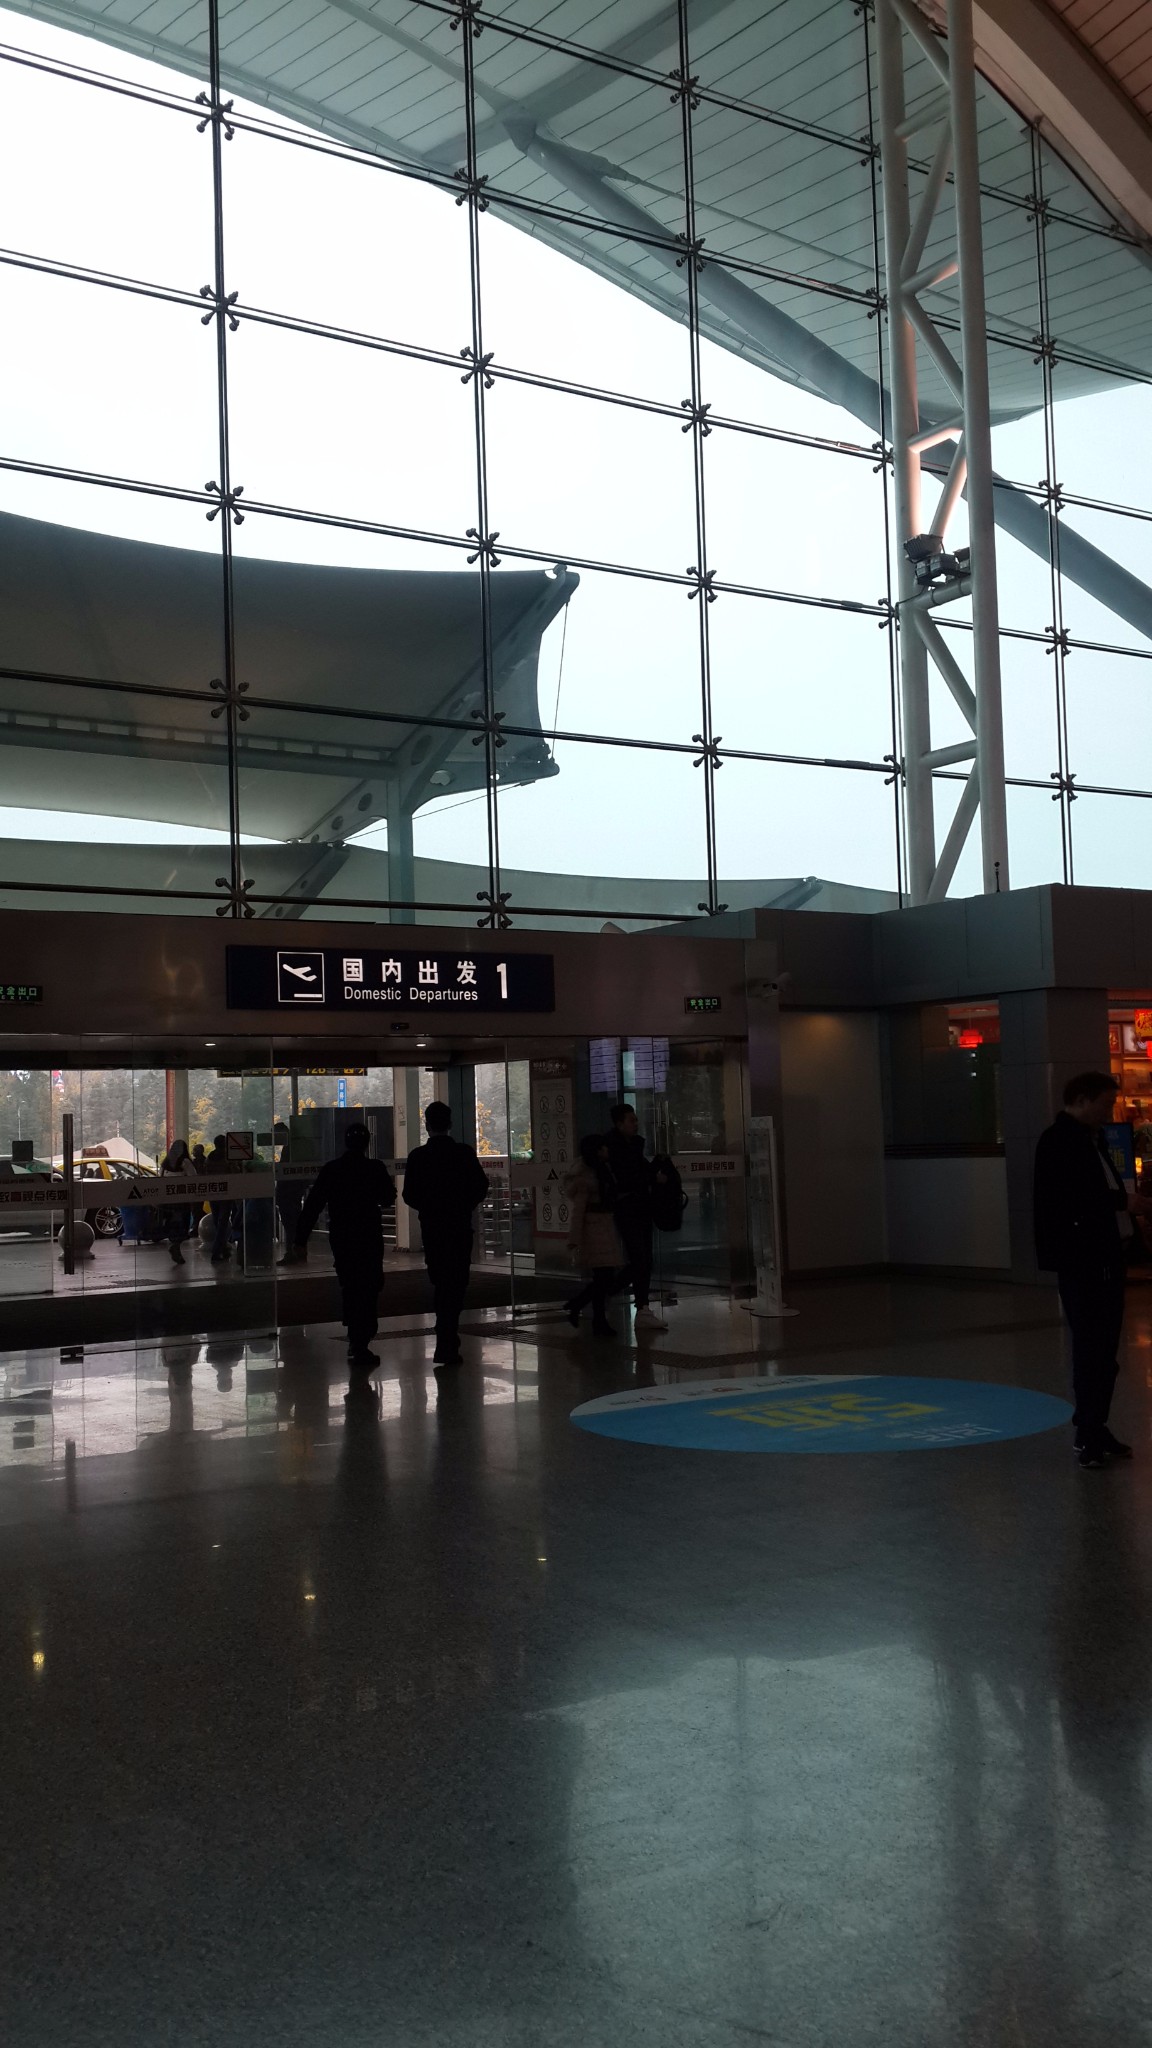 重庆江北机场 交通:美特商务酒店——>720m——>地铁1号线(尖东坡